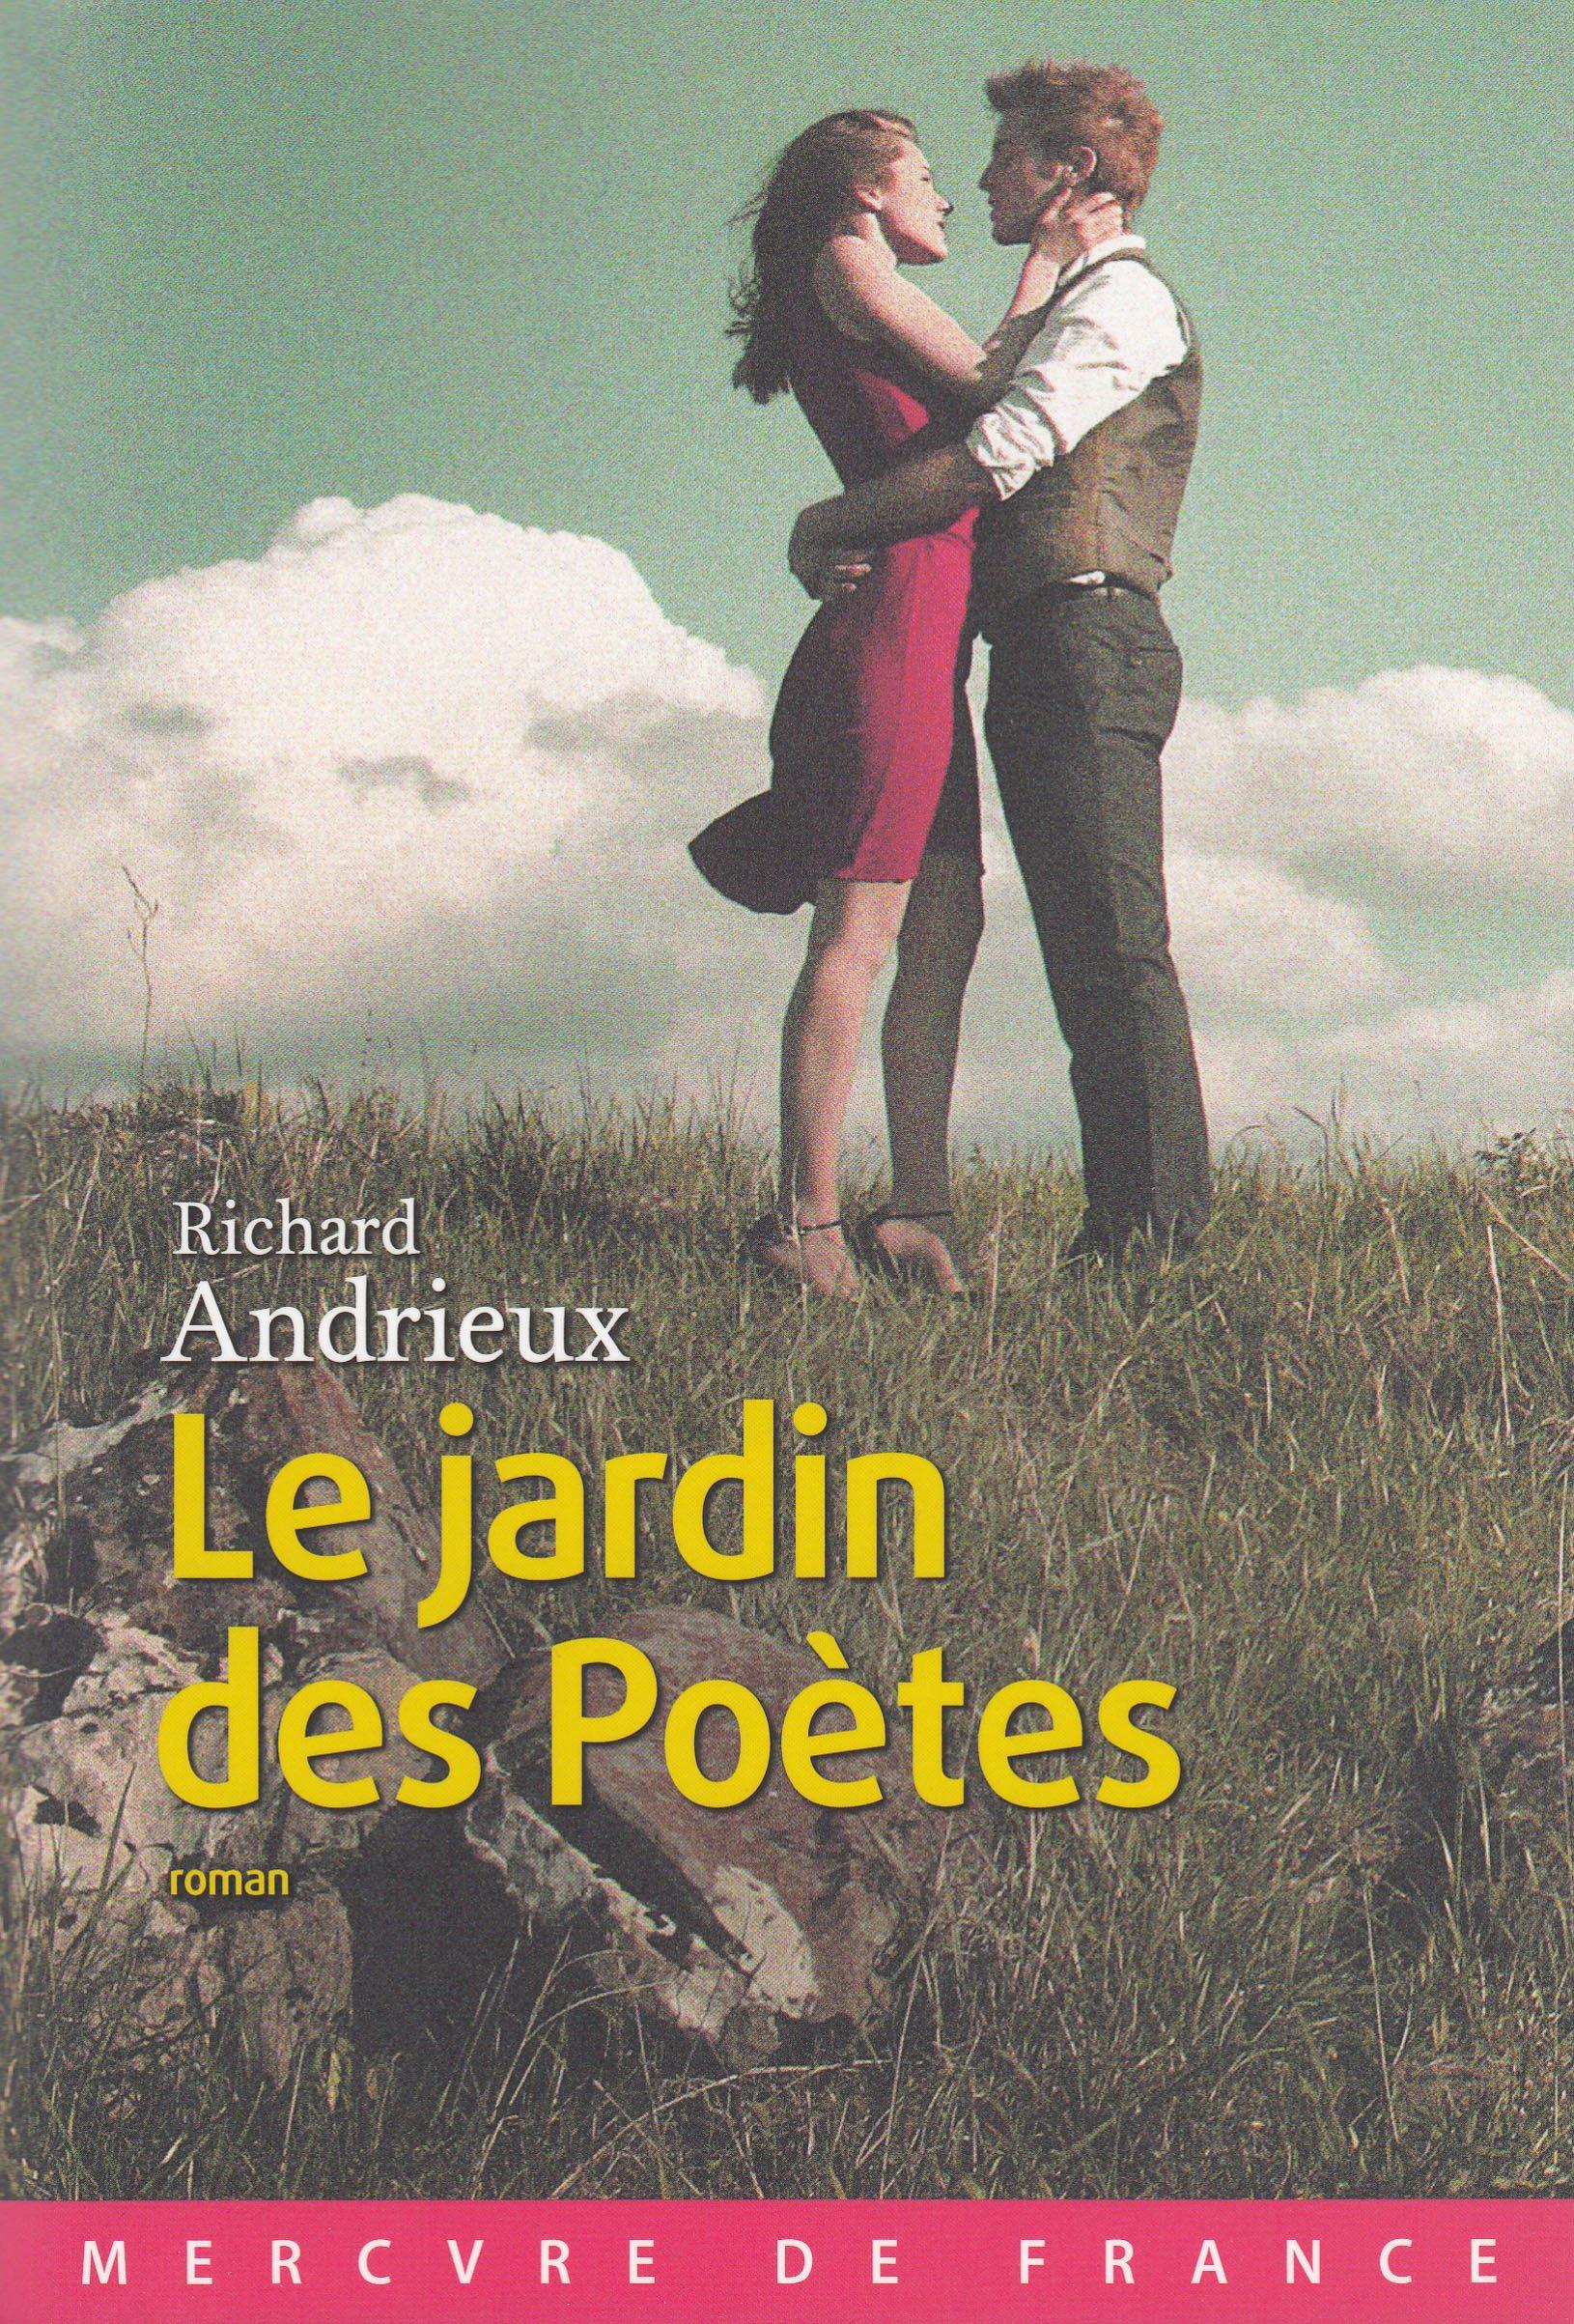 Le jardin des poètes, par Richard Andrieux